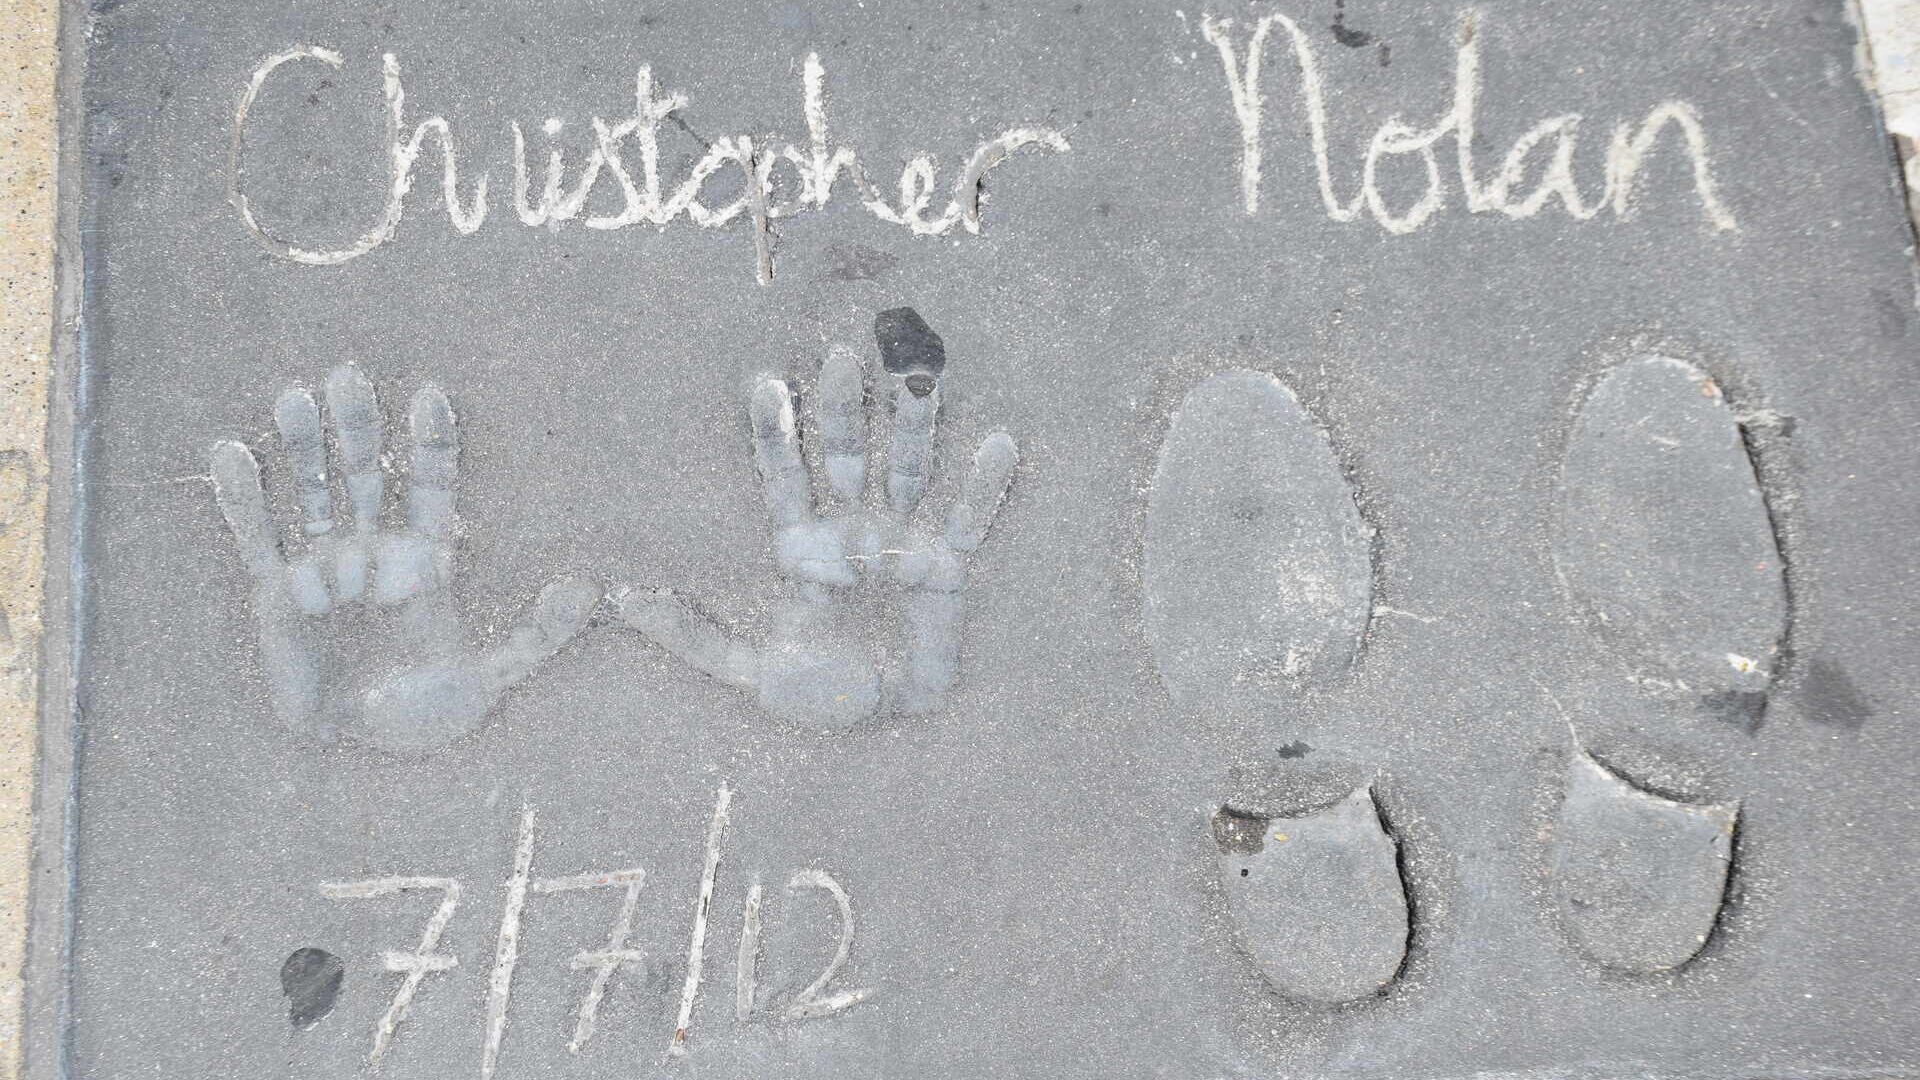 クリストファー・ノーランの手形と靴跡